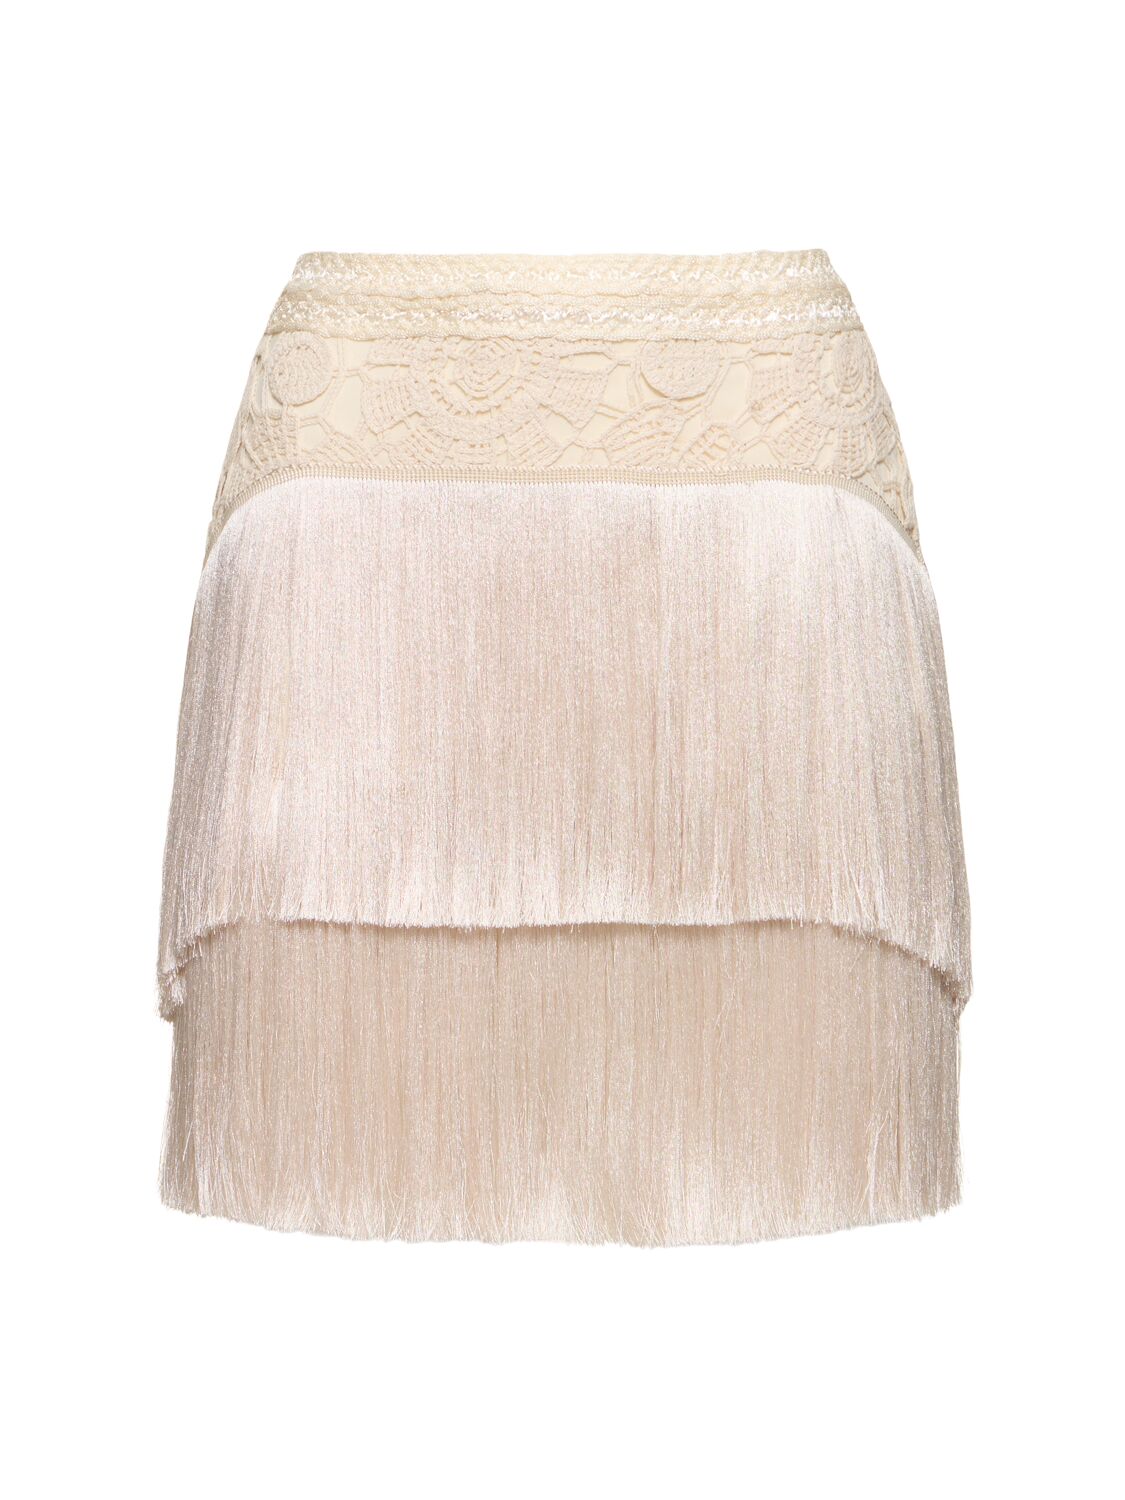 Patbo Crochet Fringed Mini Skirt In Ivory